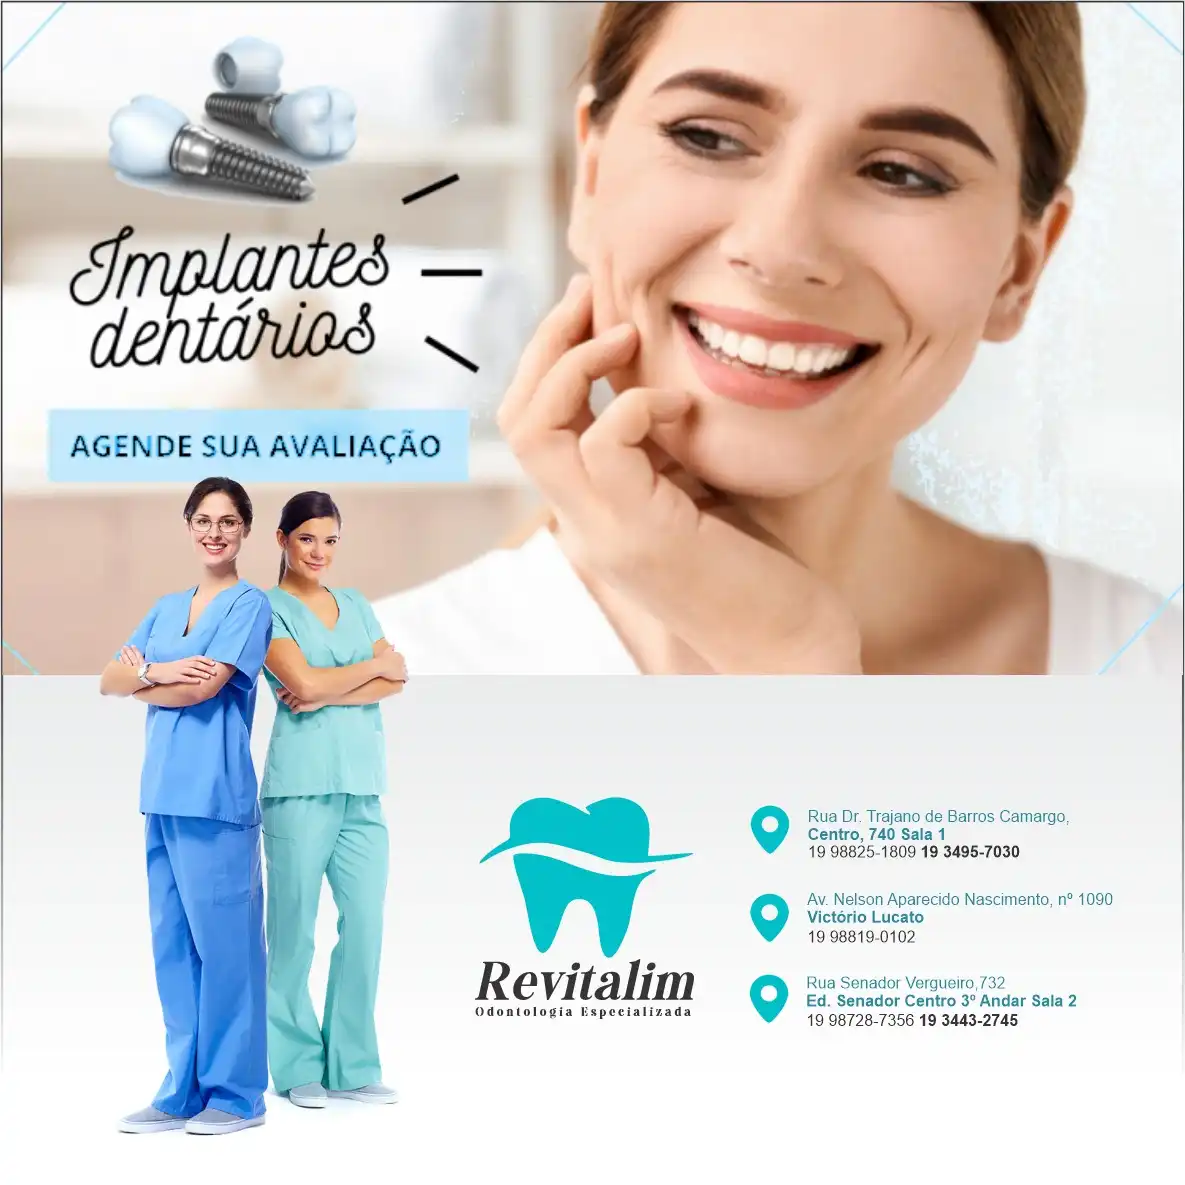 
Propaganda Avaliação Implante Dentário Dentista Odontologia Odontocirurgião



